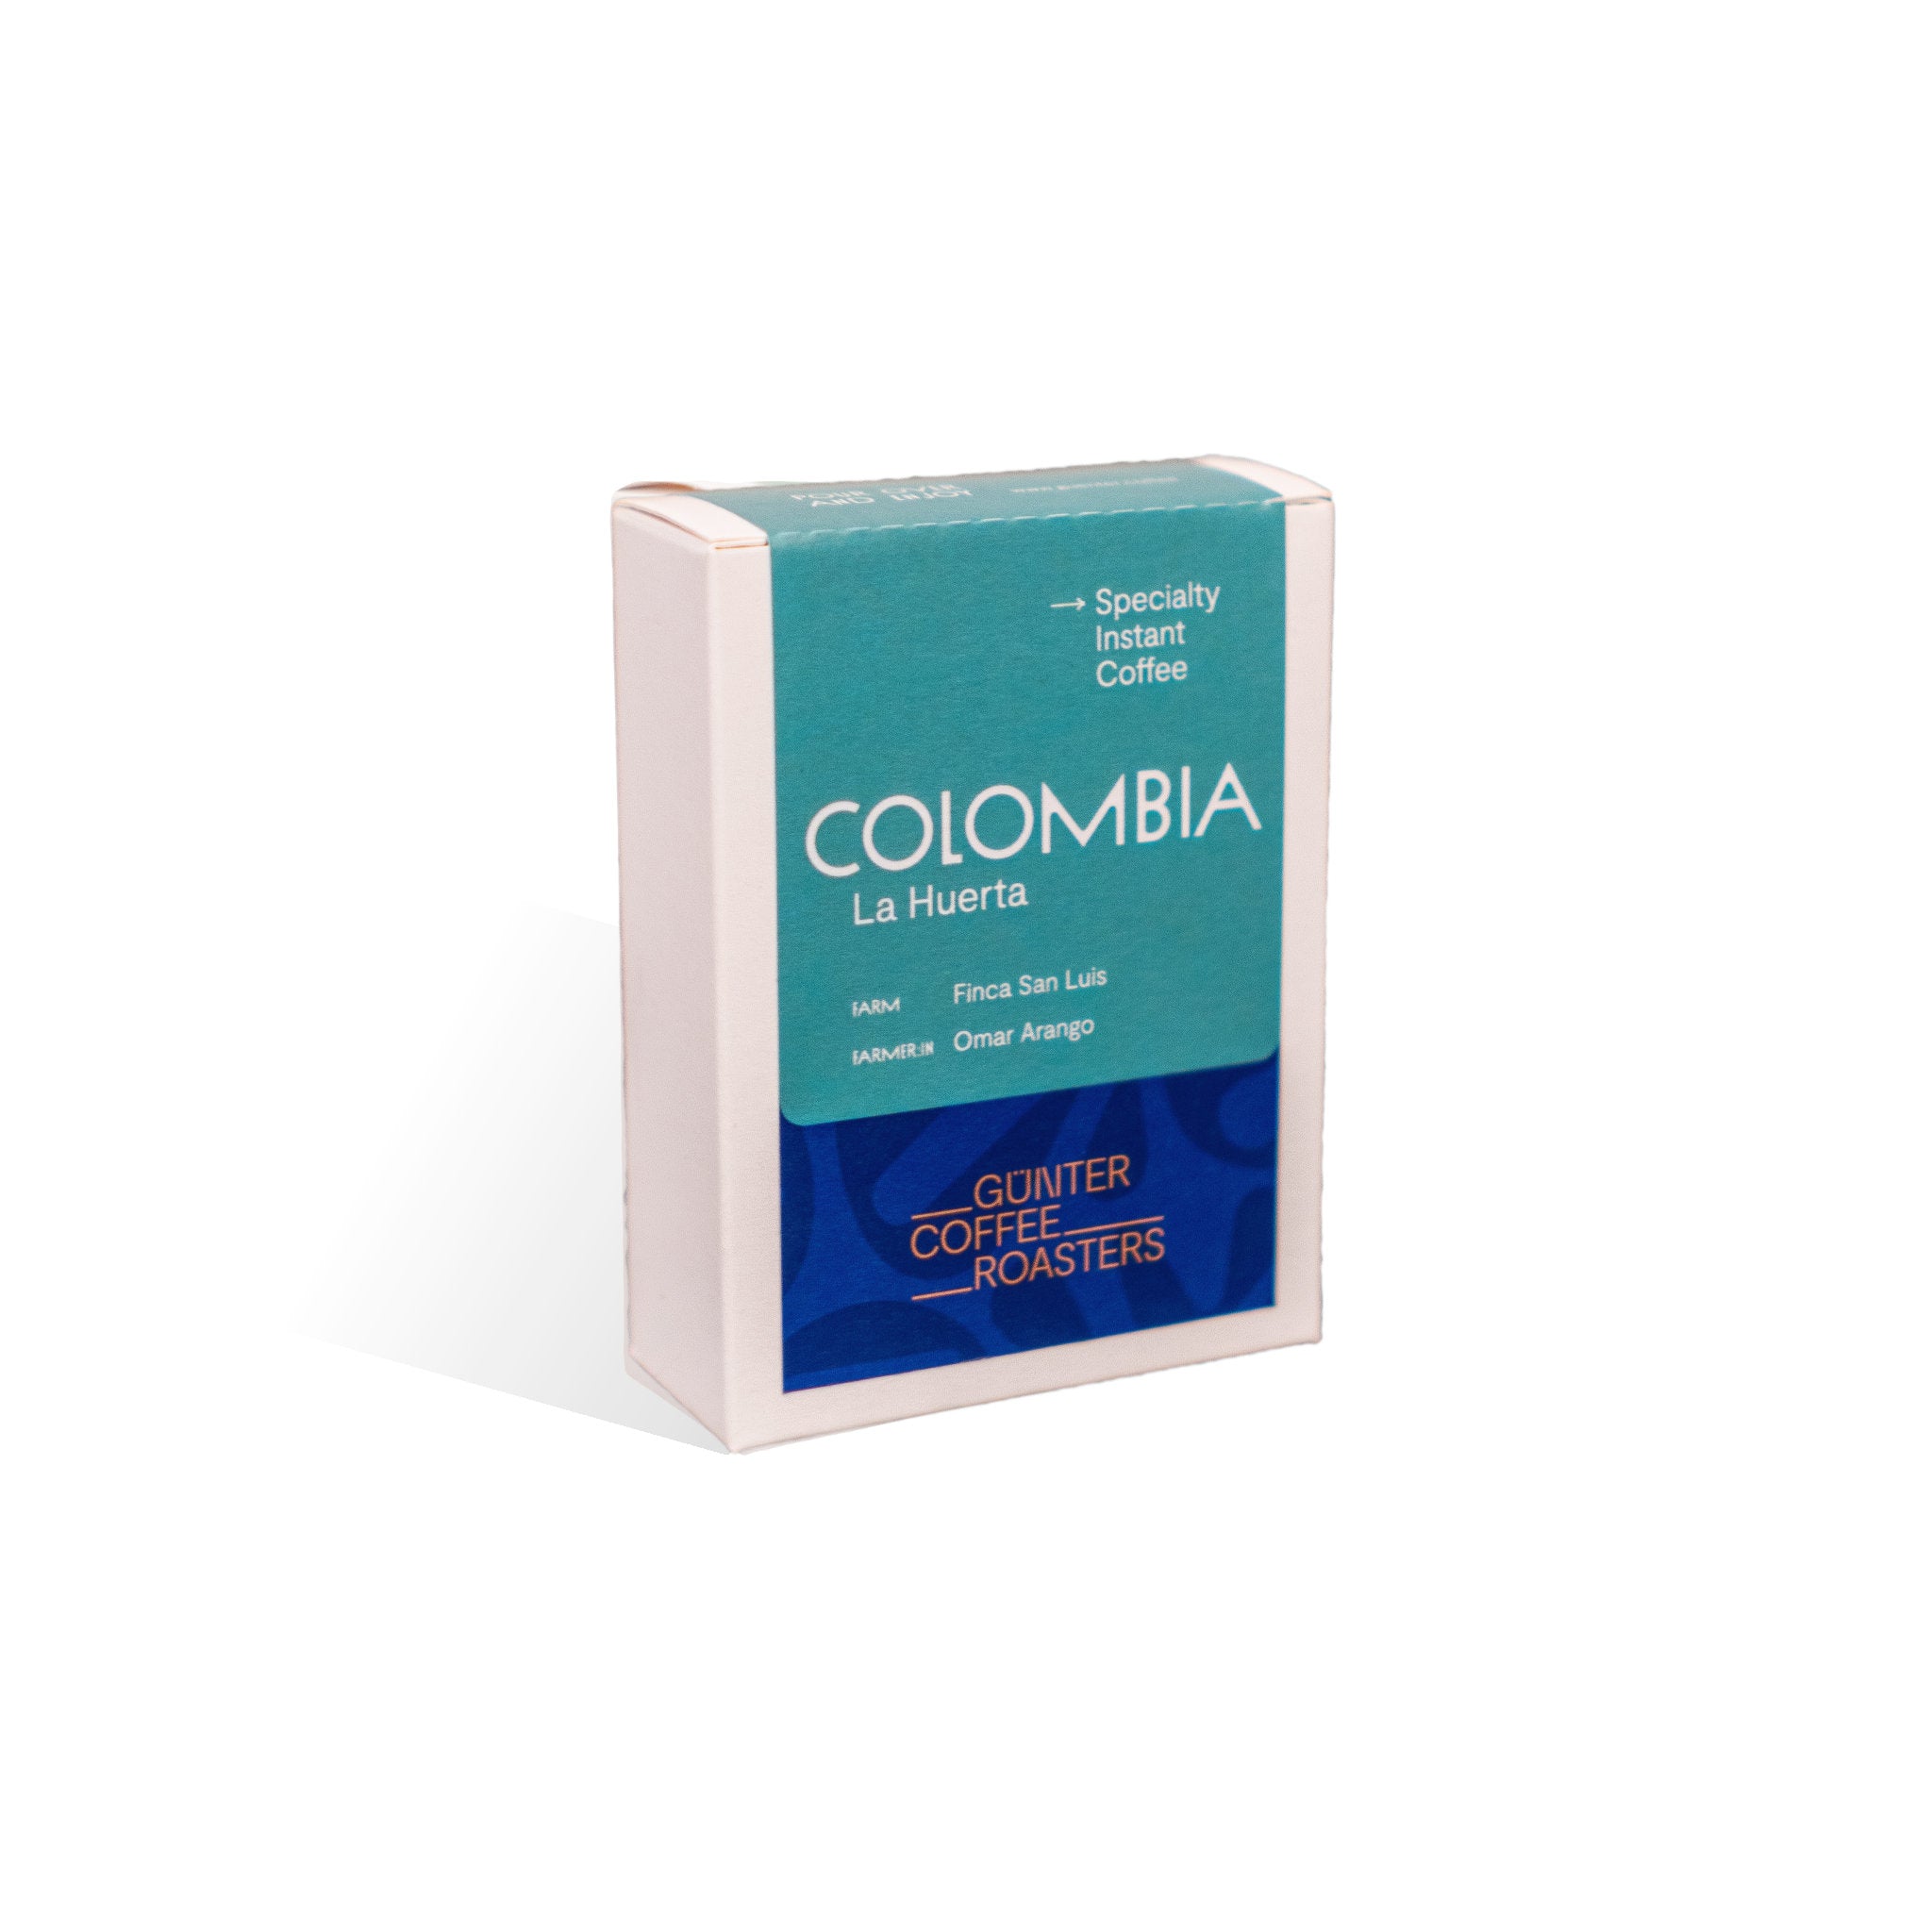 Instantkaffee Colombia La Huerta. Produktverpackung mit fünf Portionen Kaffee.